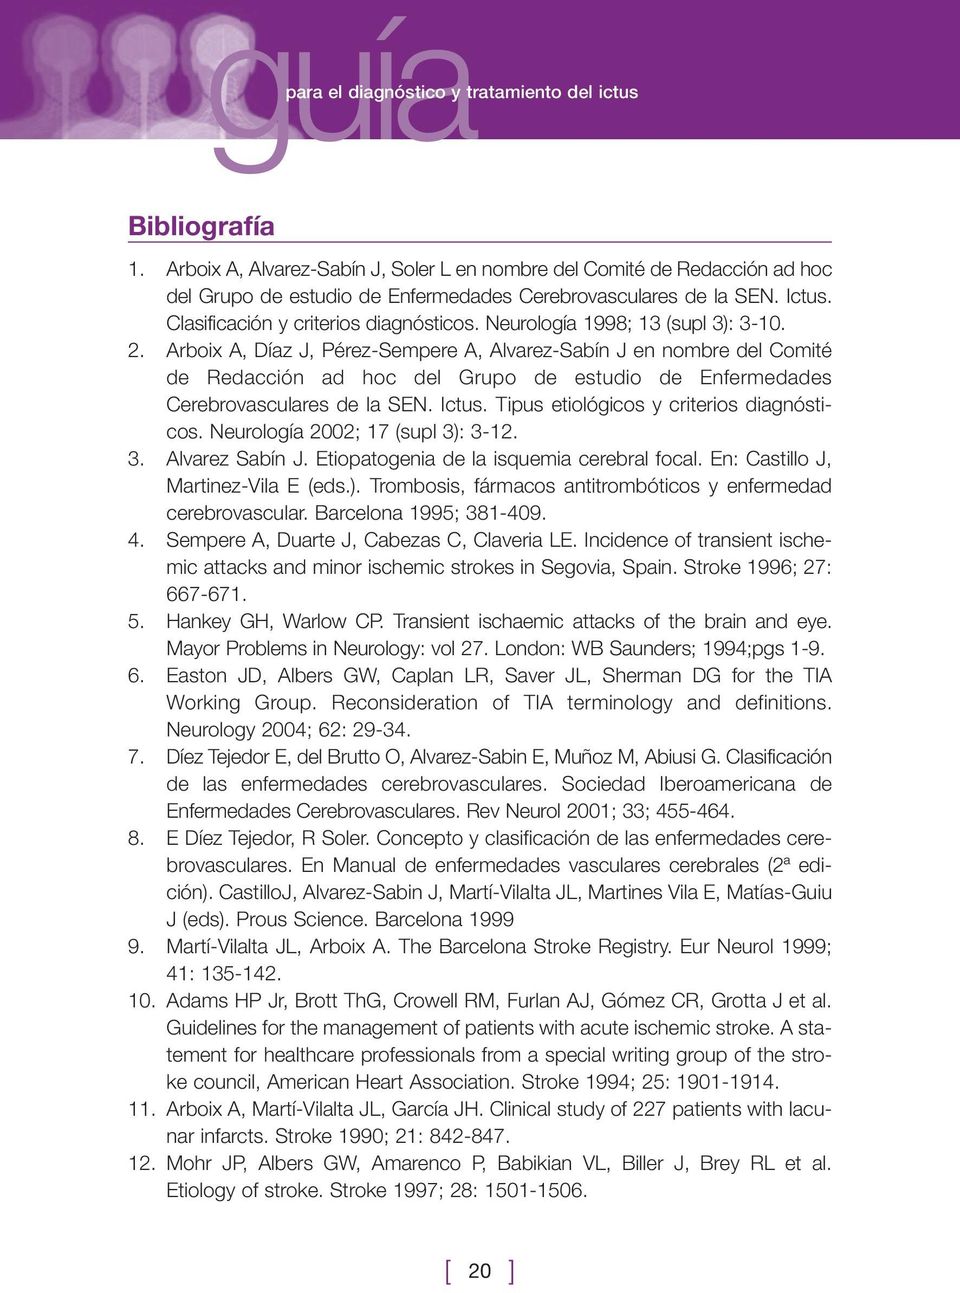 Neurología 1998; 13 (supl 3): 3-10. 2. Arboix A, Díaz J, Pérez-Sempere A, Alvarez-Sabín J en nombre del Comité de Redacción ad hoc del Grupo de estudio de Enfermedades Cerebrovasculares de la SEN.